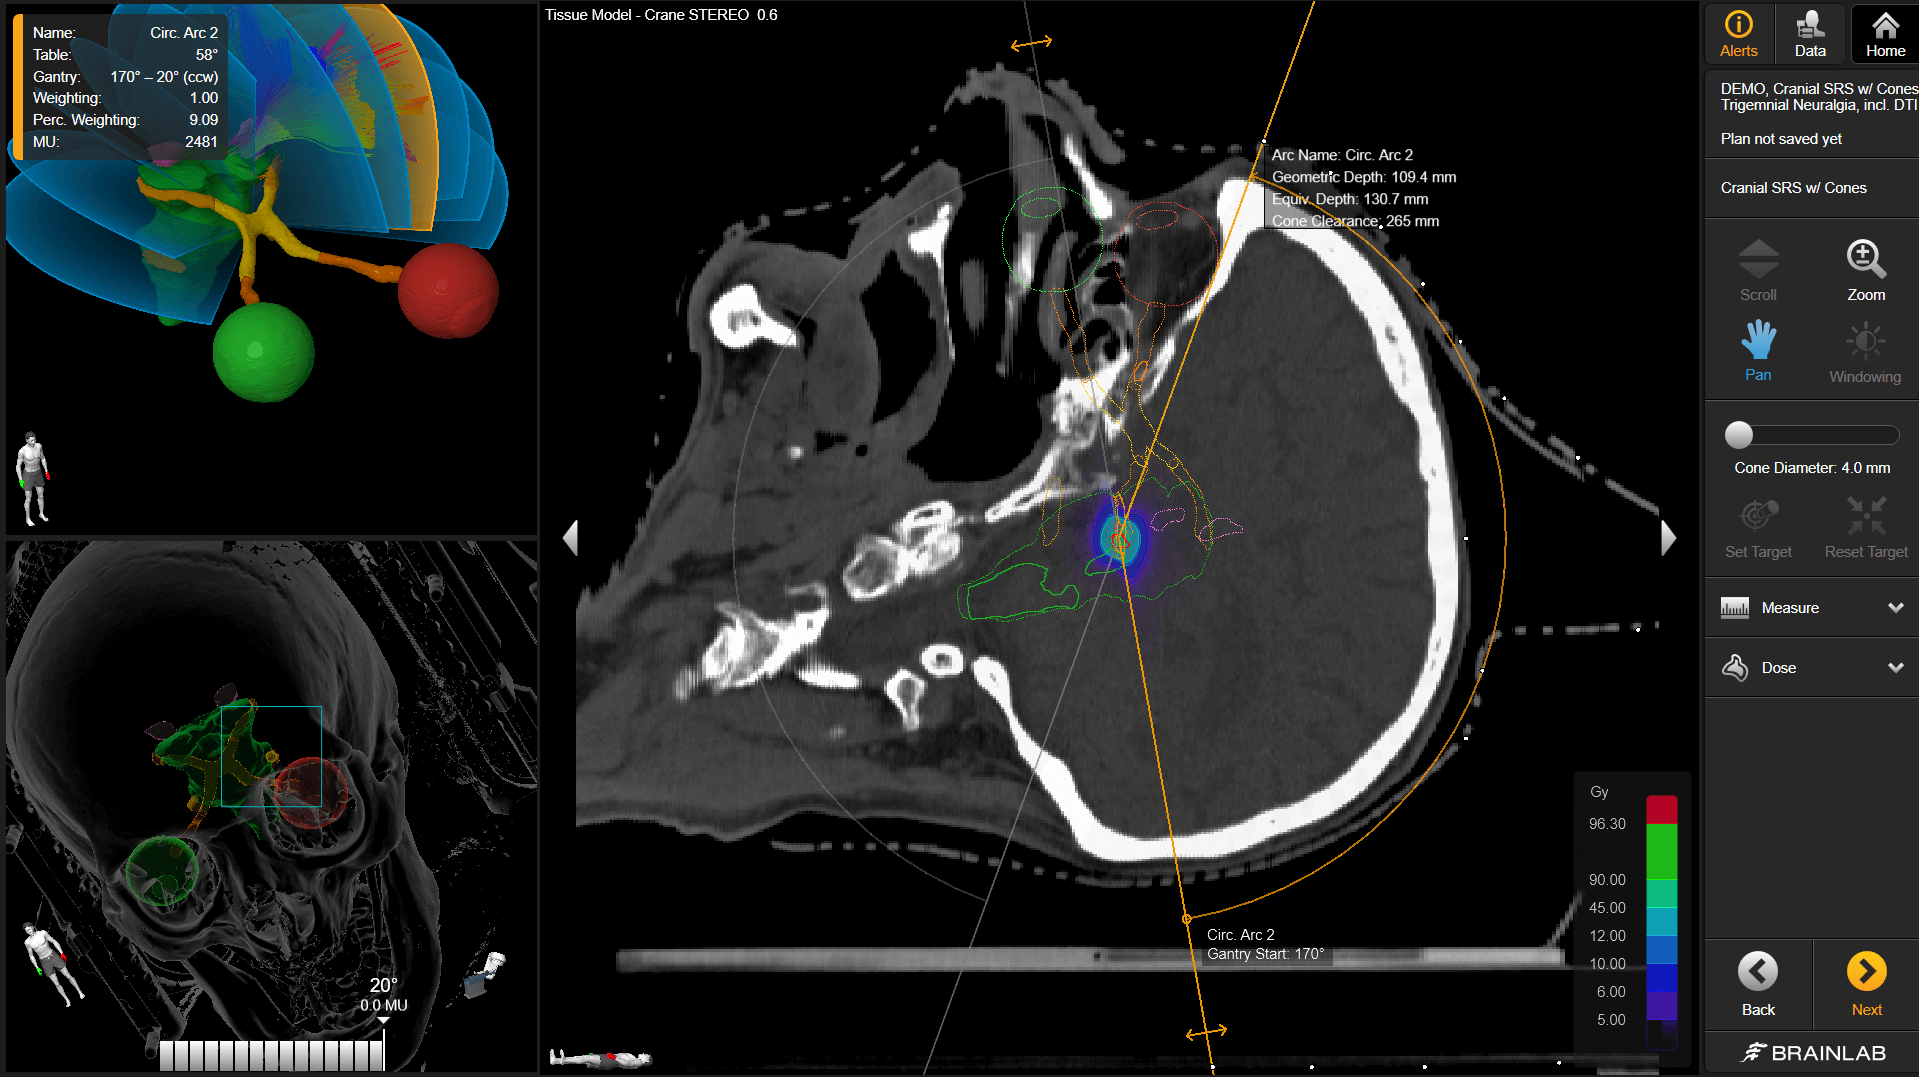 Vues de différents plans d’un cerveau dans un plan de radiothérapie crânienne montrant différents angles et éléments du traitement.